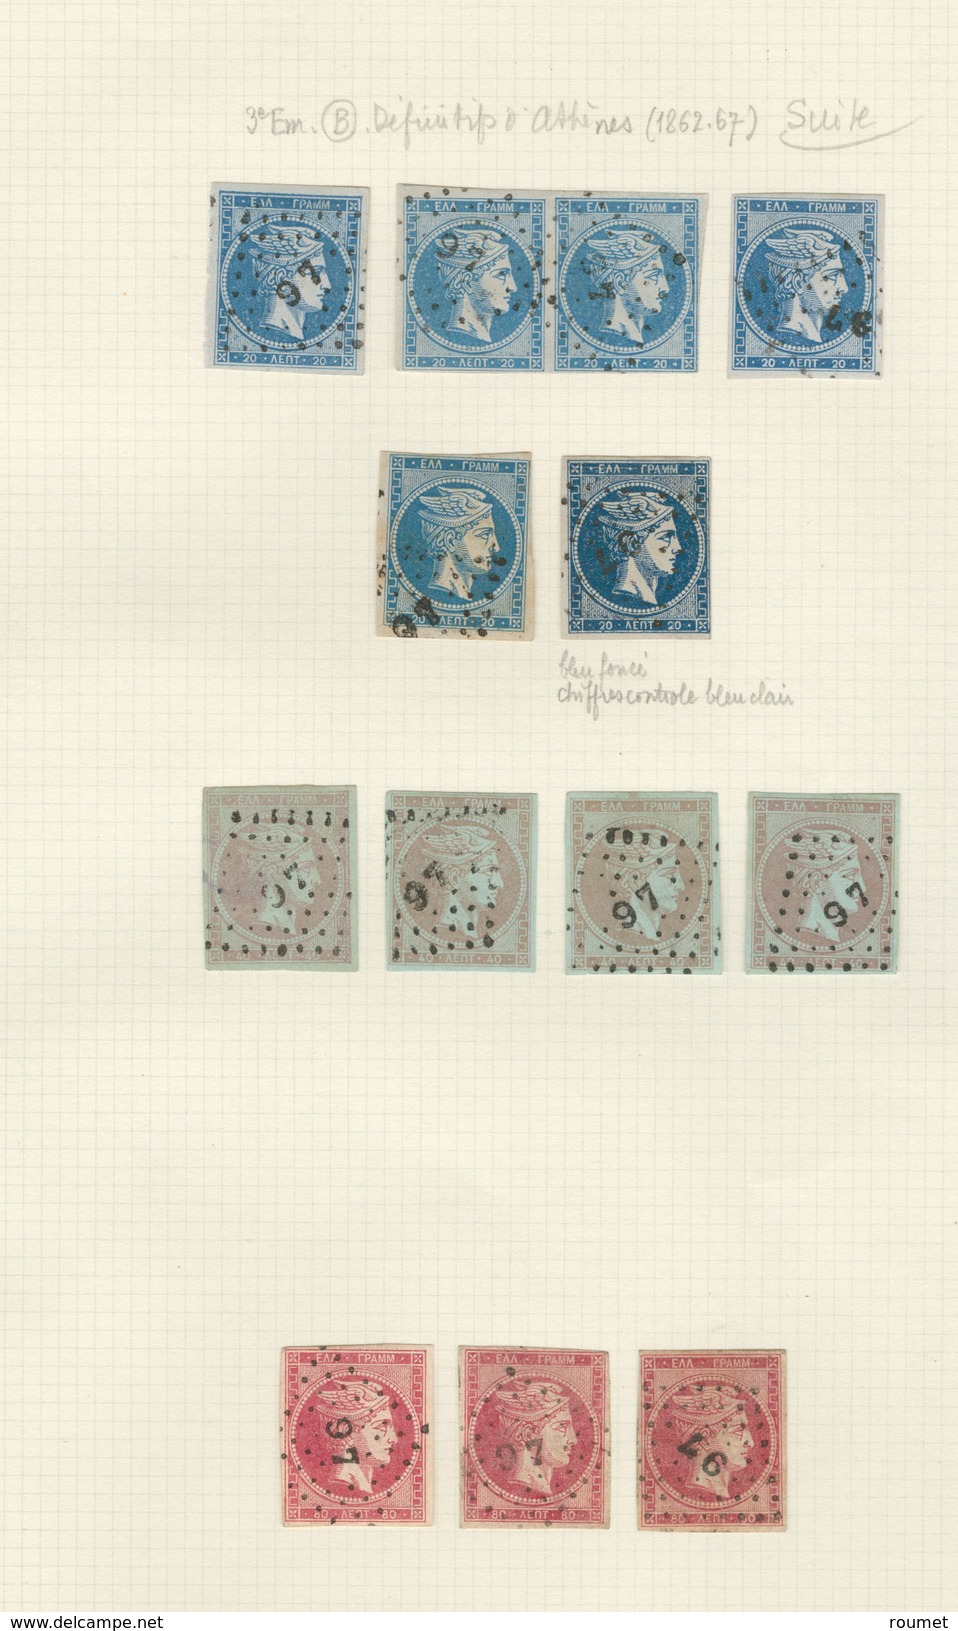 GRECE. Collection. Oblitérations de la Méditerranée 1861-1882 (Poste), environ 200 détachés et 21 plis, dont Alexandrie,